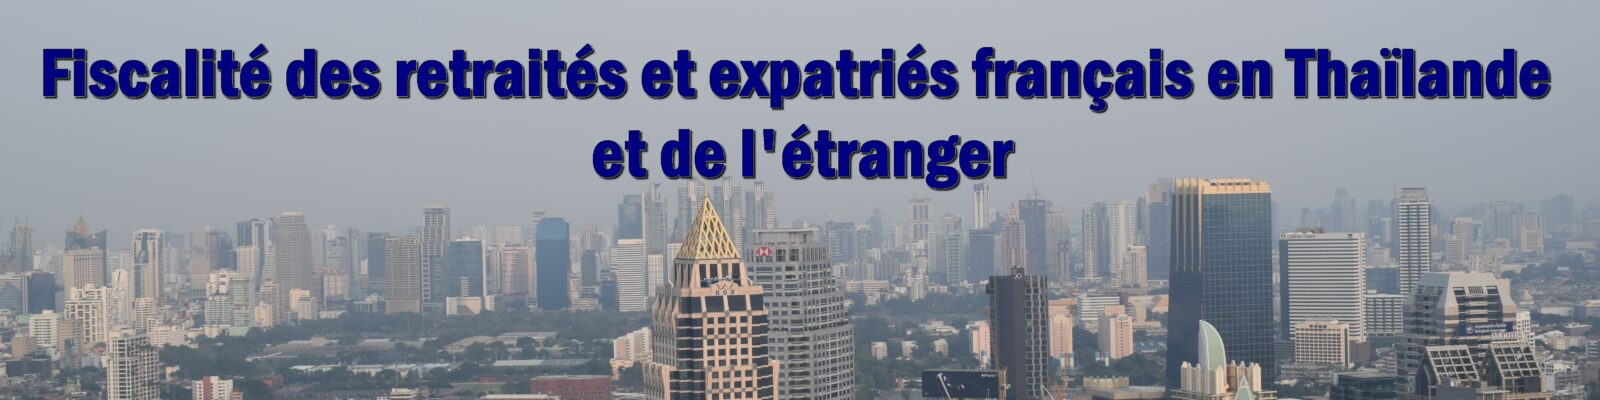 Fiscalité des retraités et expatriés français en Thaïlande, et de l'étranger